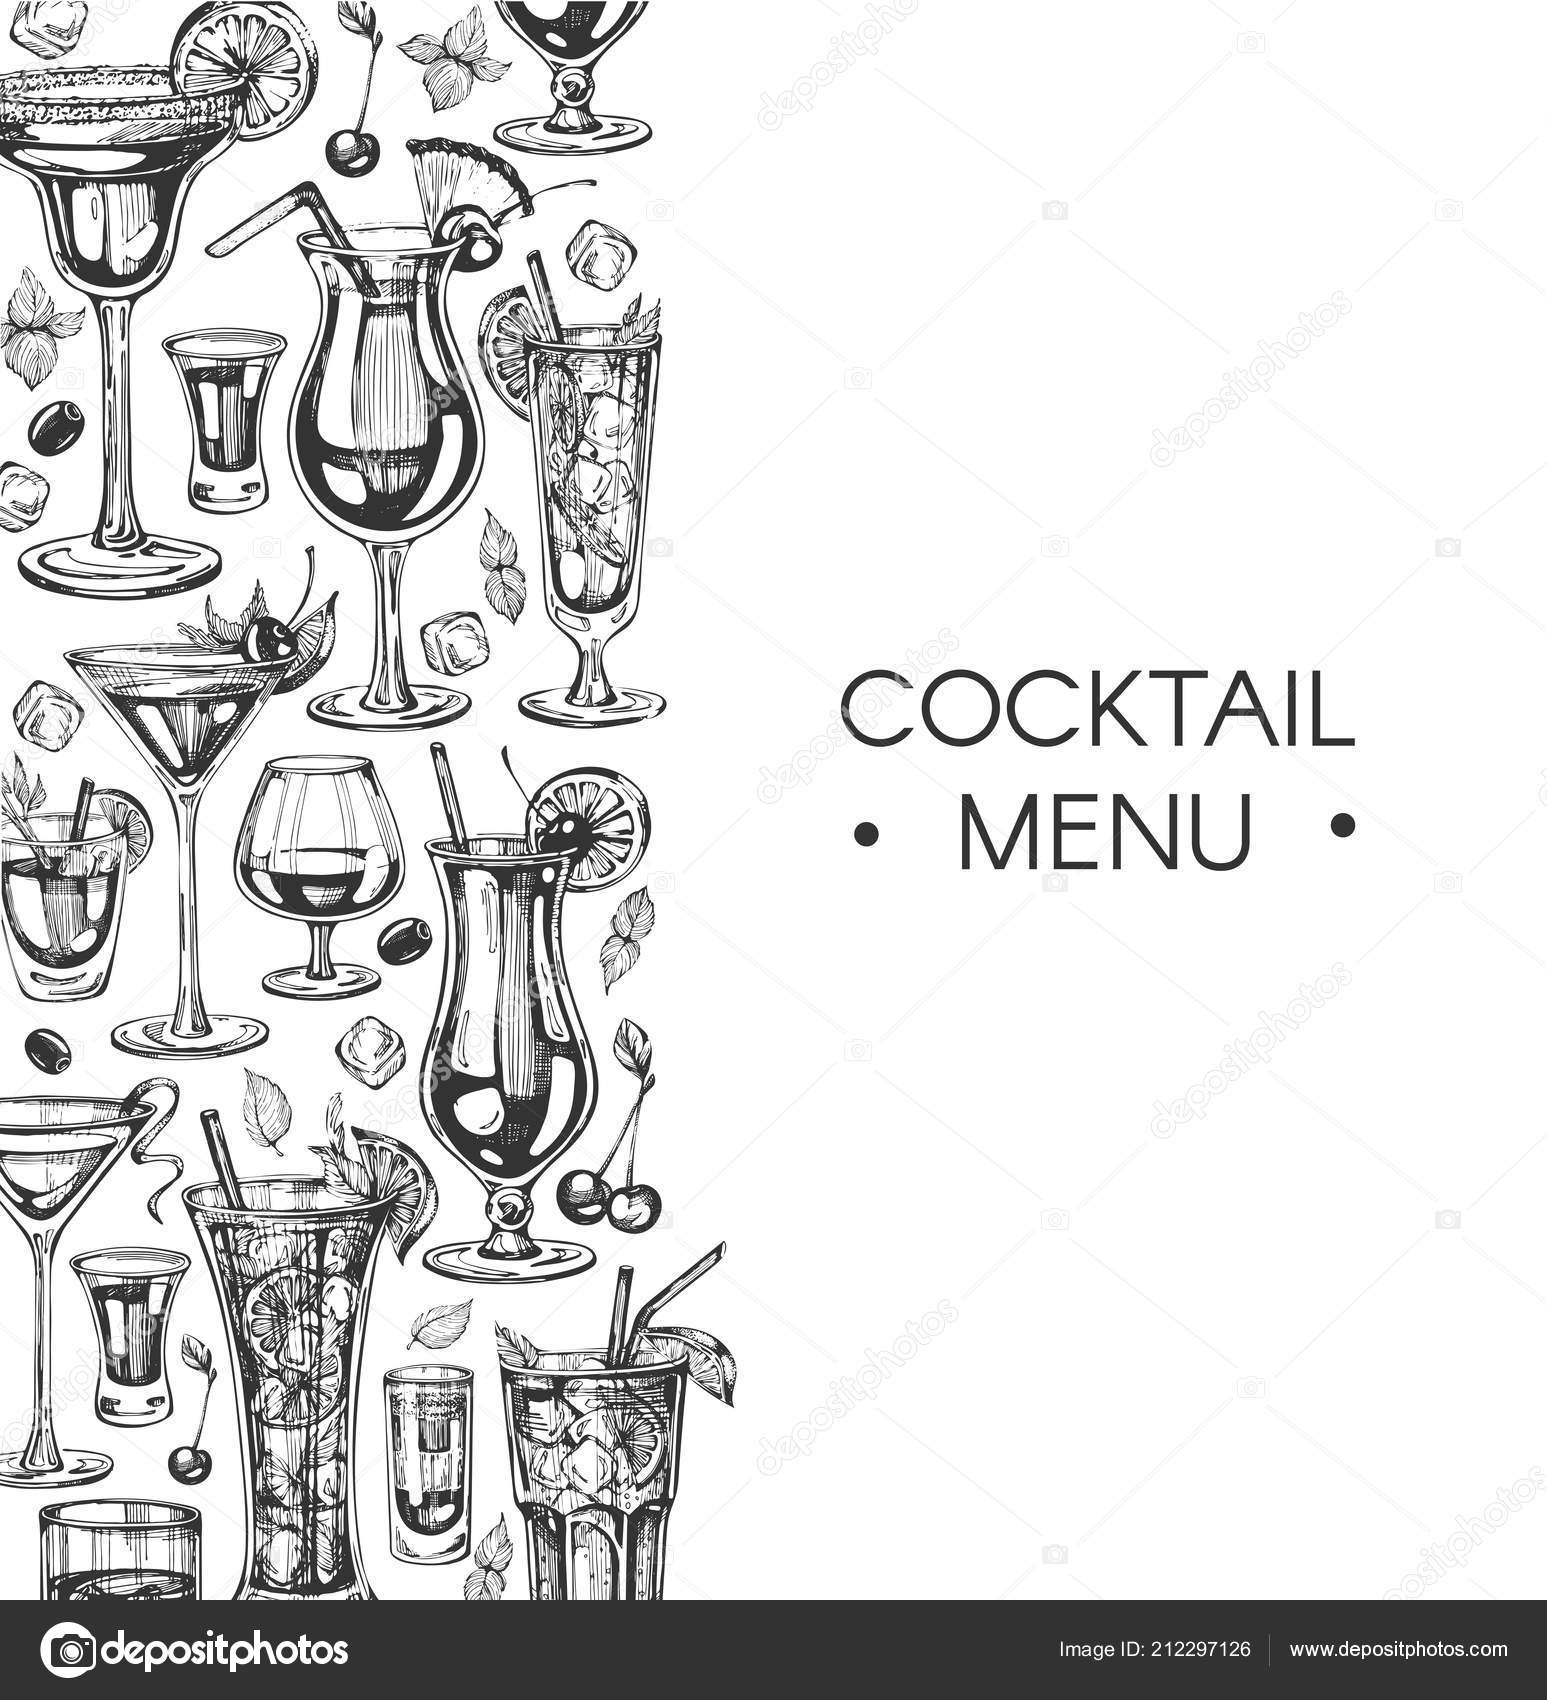 Vector nền đồ uống cocktail trên thực đơn sẽ khiến bạn cảm thấy ngấp nghé và muốn thử ngay những cocktail đầy màu sắc và hương thơm. Hãy xem và lựa chọn để thưởng thức những ly cocktail độc đáo và tinh tế ngay trên bàn uống của bạn.